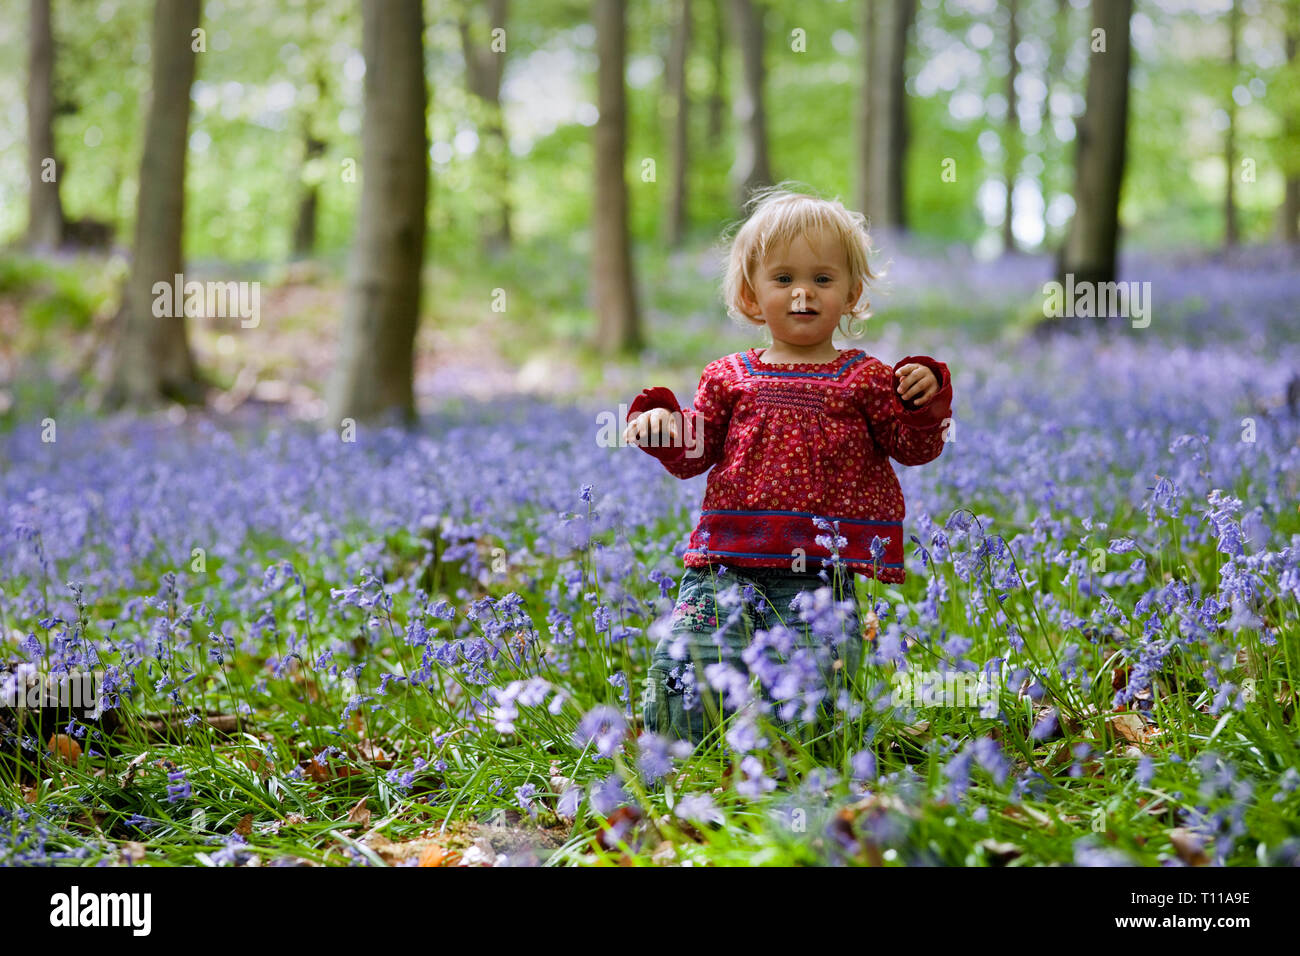 La Grande-Bretagne, l'Angleterre, forêt de Dean. Bénéficiant d'une petite fille des bois bluebell. M. Banque D'Images